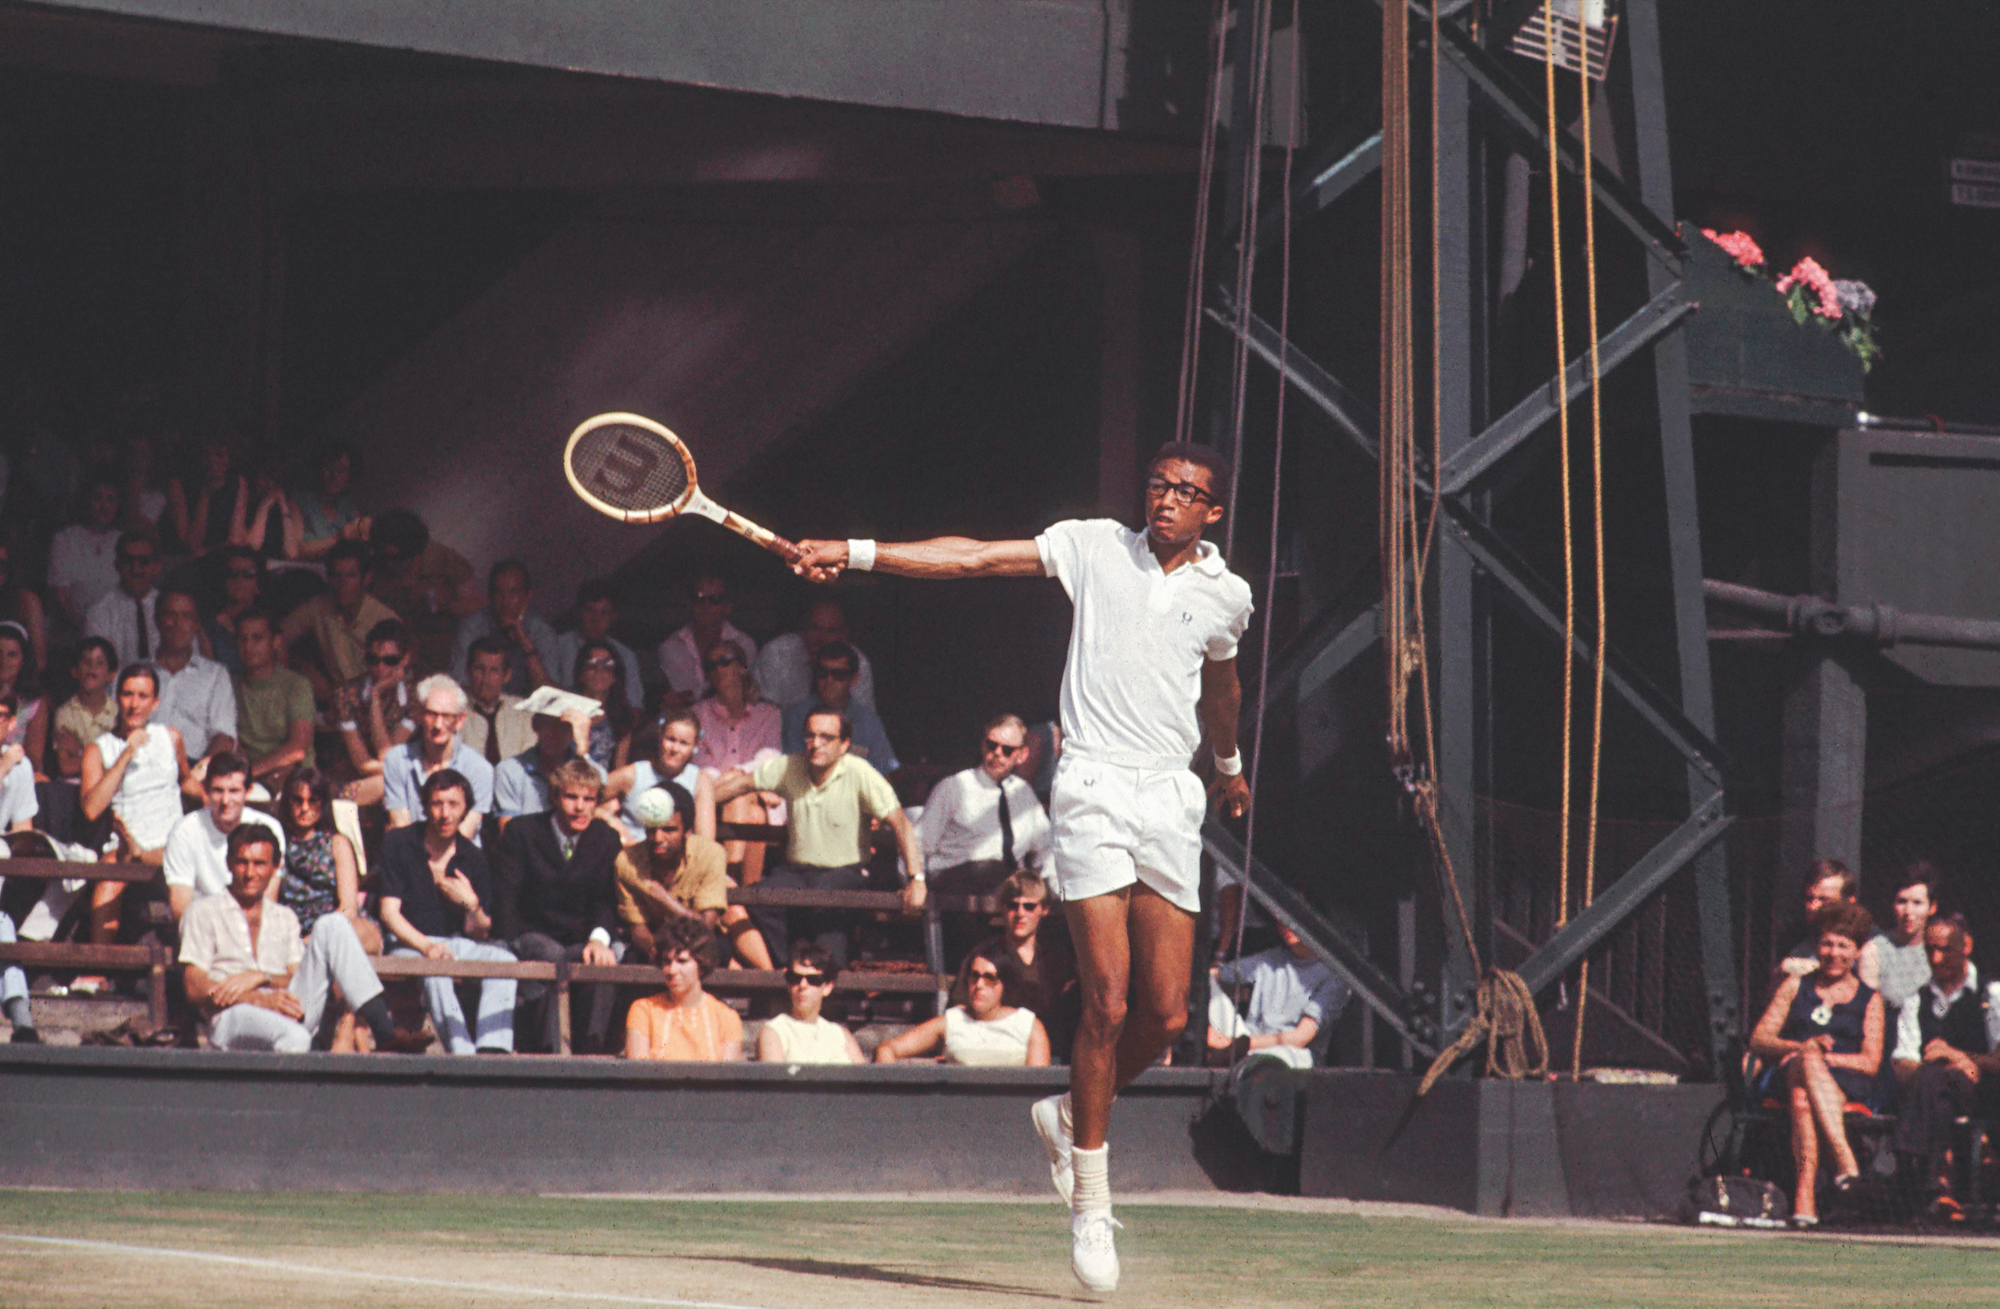 Arthur Ashe im Porträt: Mit Schwung in die Herzen - tennis MAGAZIN